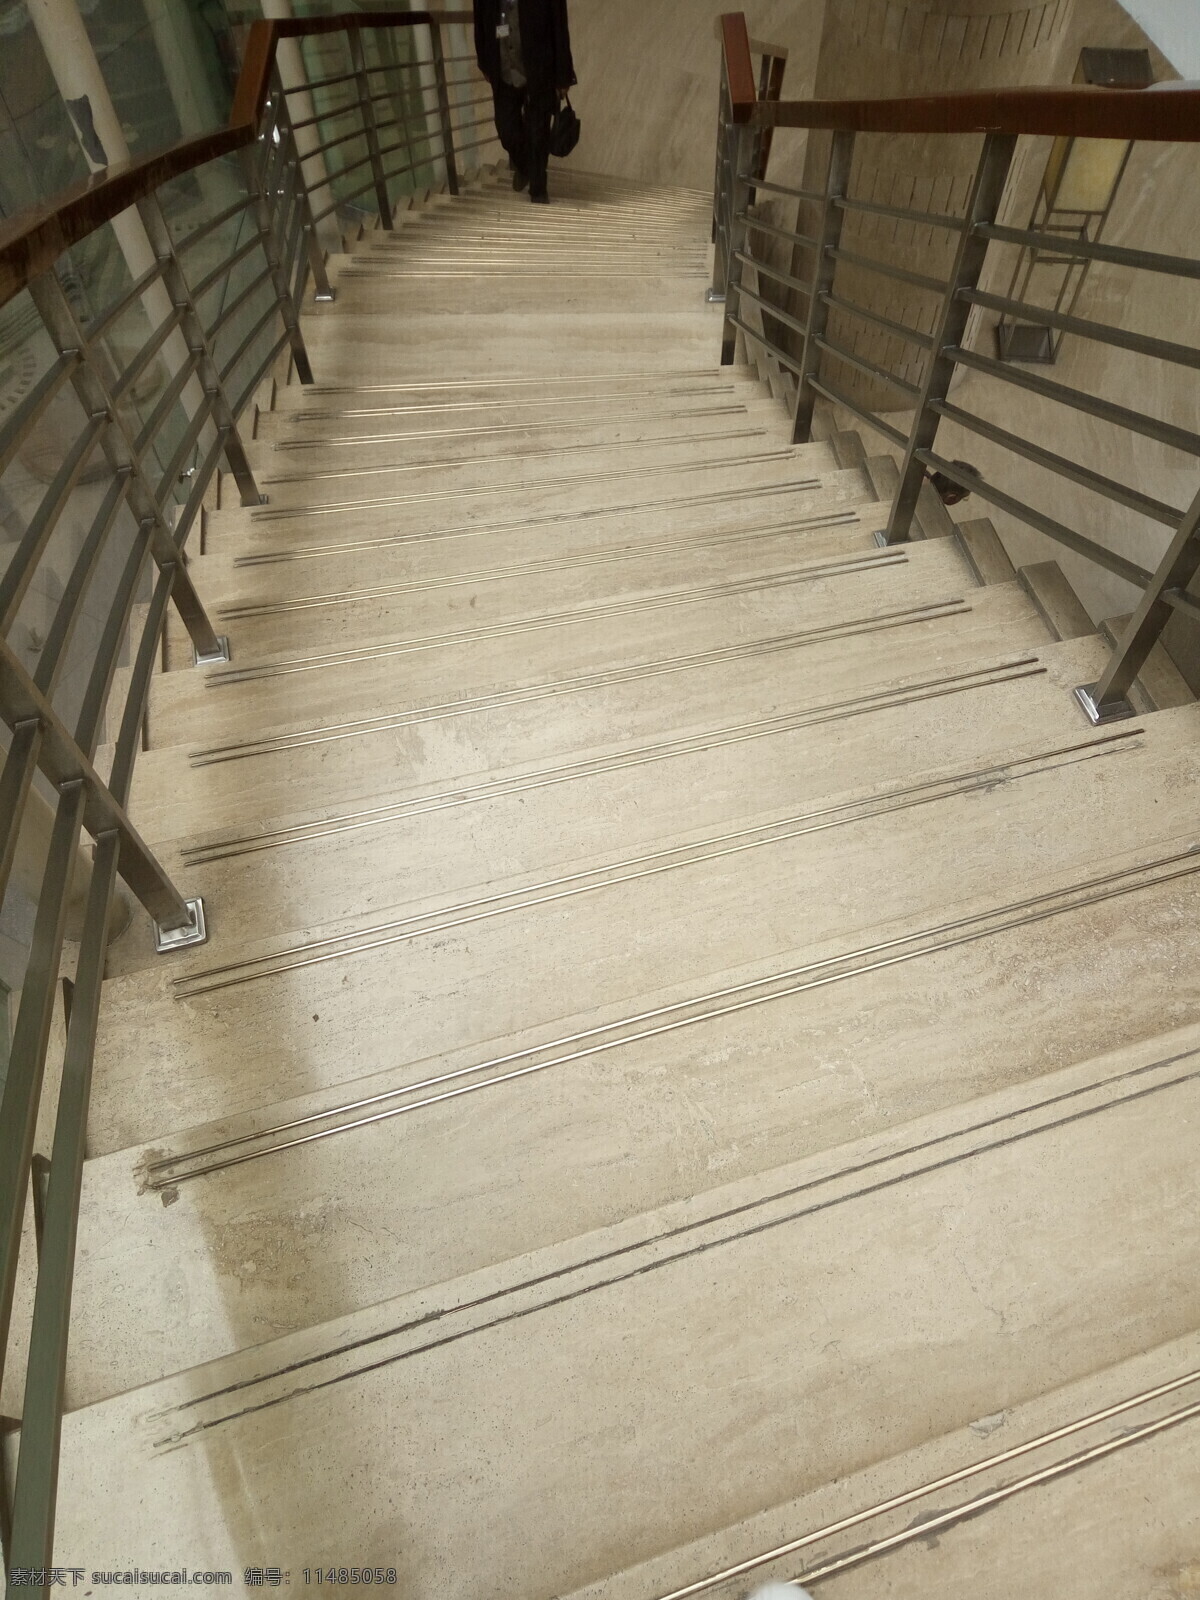 楼梯图片 楼梯 扶梯 手扶梯 静物 背景 不锈钢扶手 梯级 圆形楼梯 建筑 室内建筑 阶梯 建筑园林 室内摄影 照片 自然景观 自然风景